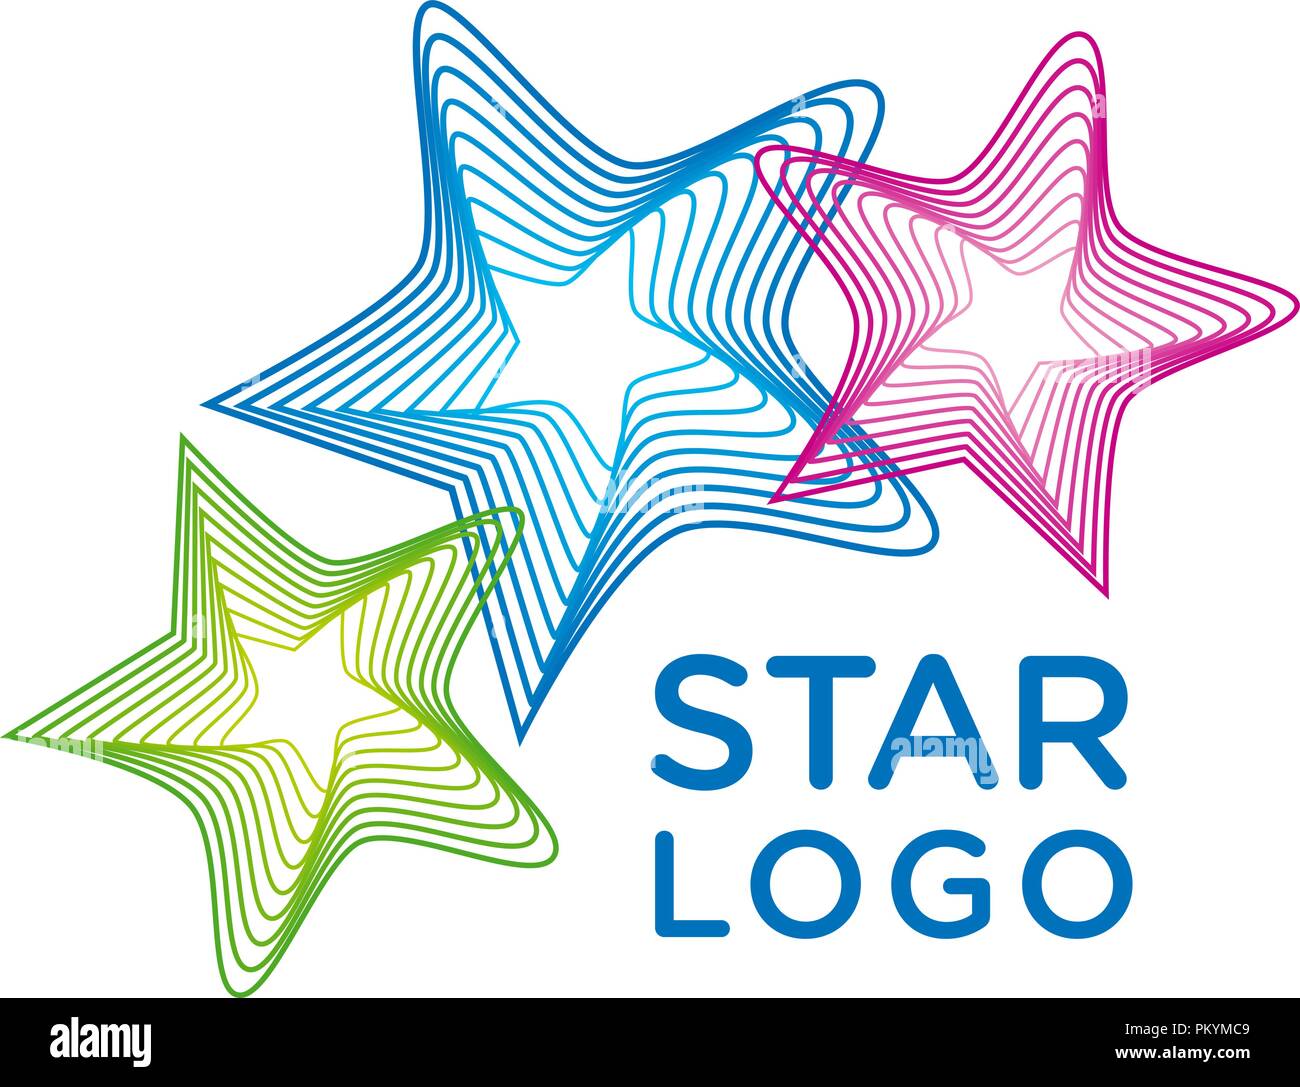 Vector star logo. Stock Vector